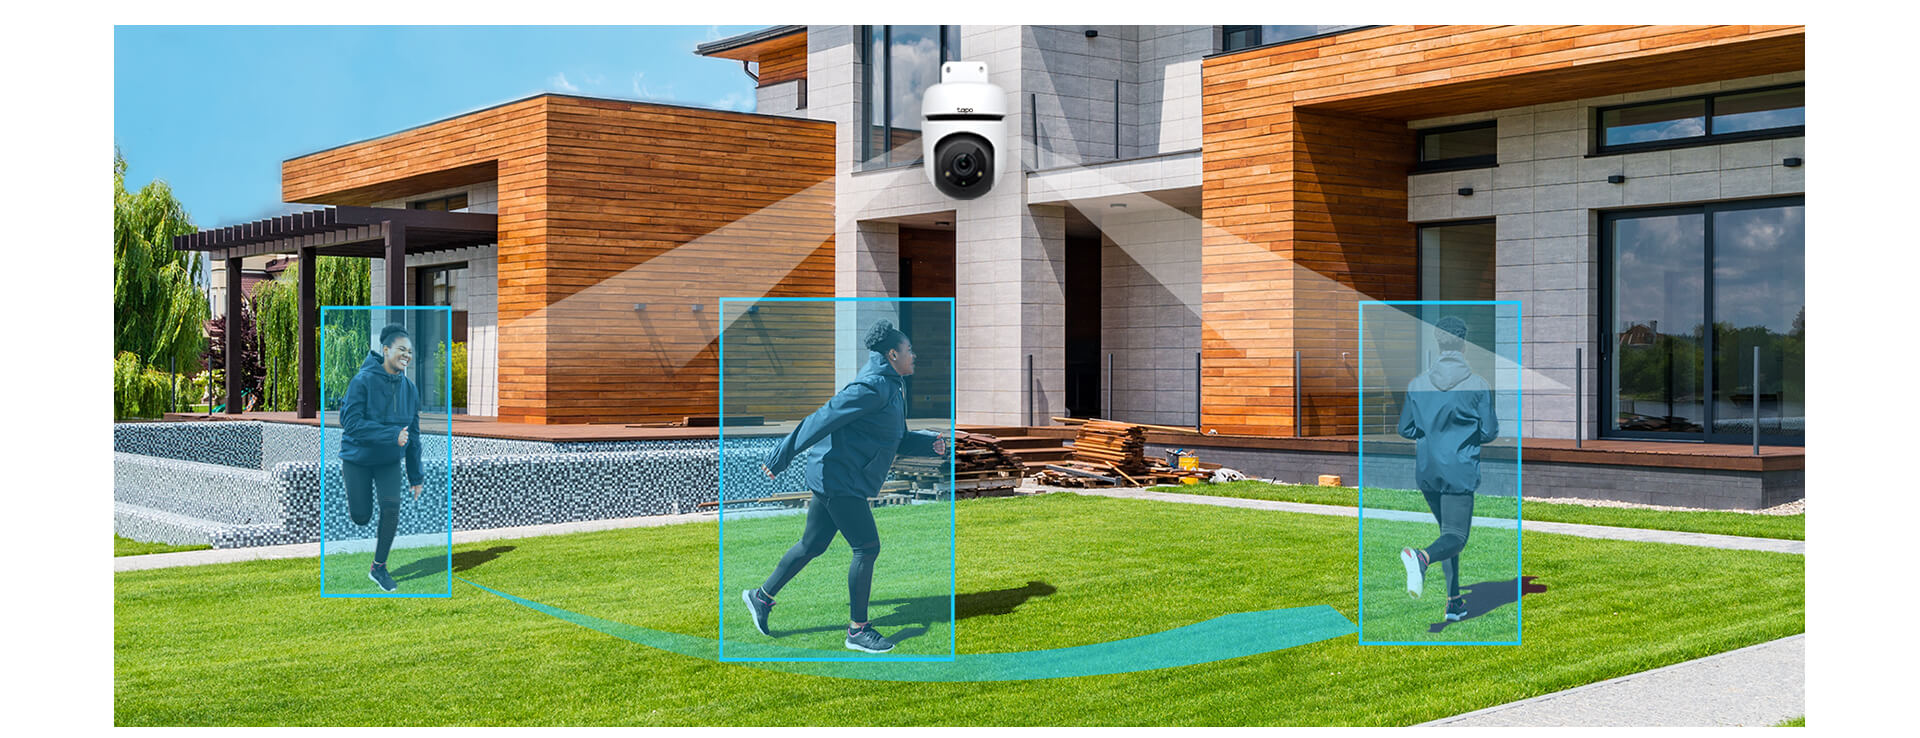 دوربین گردان هوشمند تی پی لینک تپو بیرونی مدل Tapo C500 دارای تشخیص هوشمند حرکت و تشخیص انسان است.